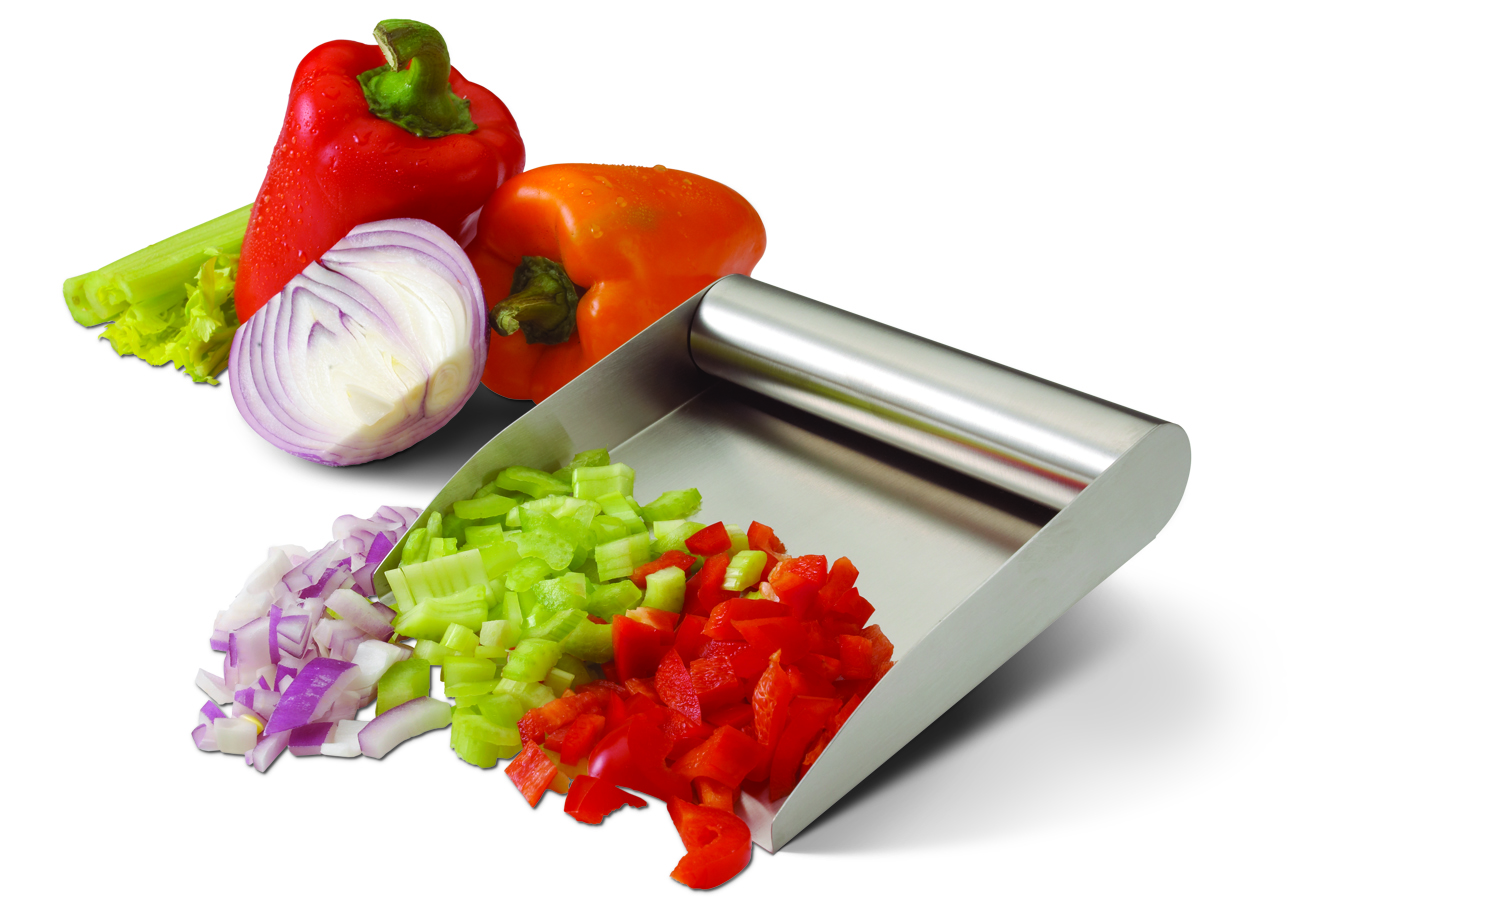 PrepTaxi food scoop - Stainless Steel - Food Preparation – Ergonomic